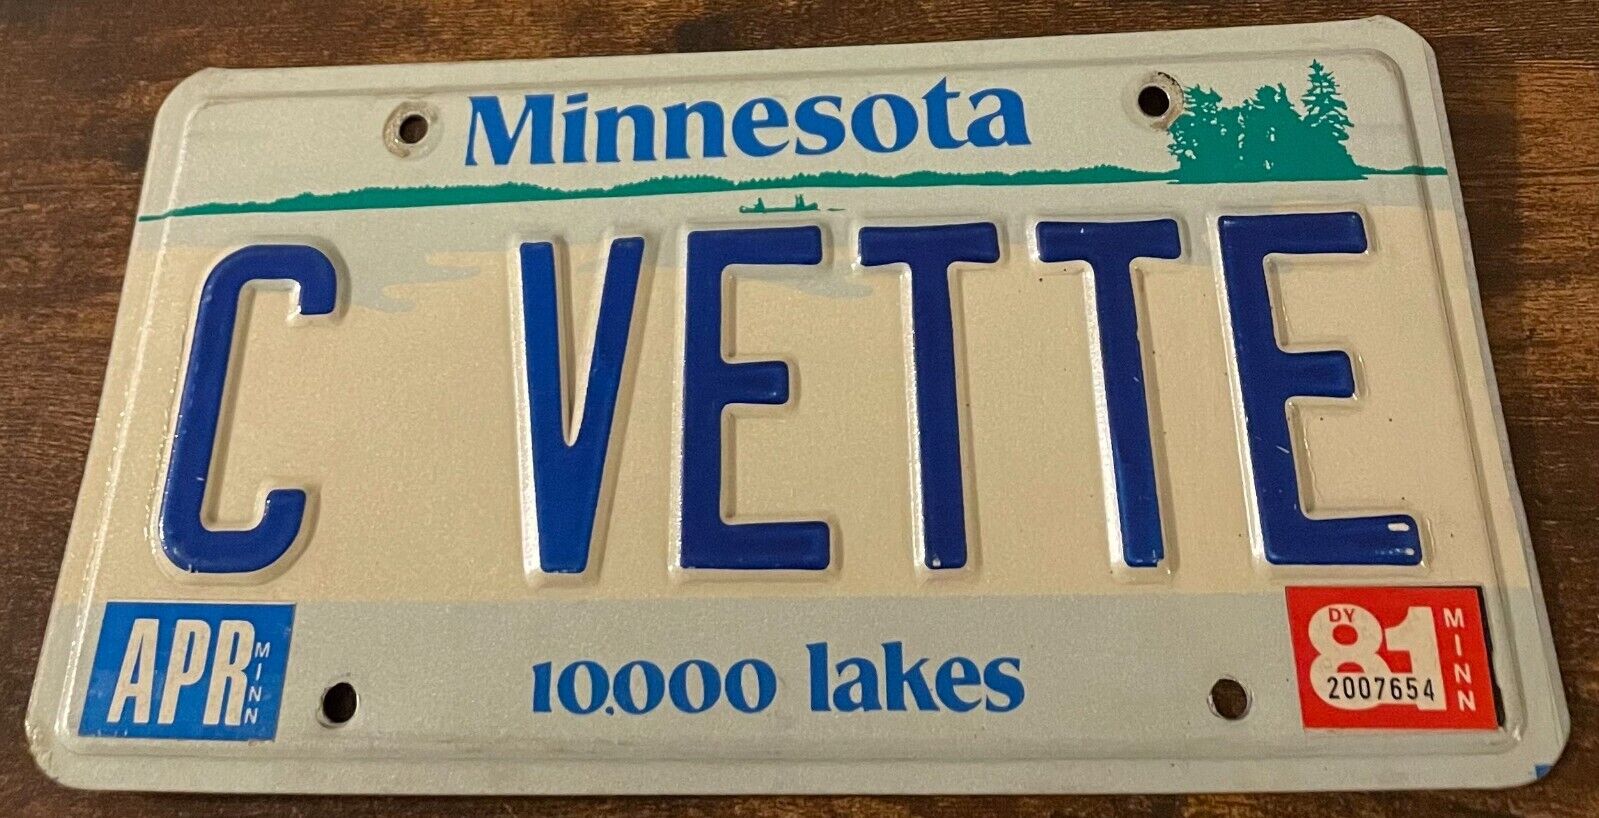 C VETTE Vanity License Plate Corvette C1 C2 C3 C4 C5 C6 C7 C8 Minnesota 1981